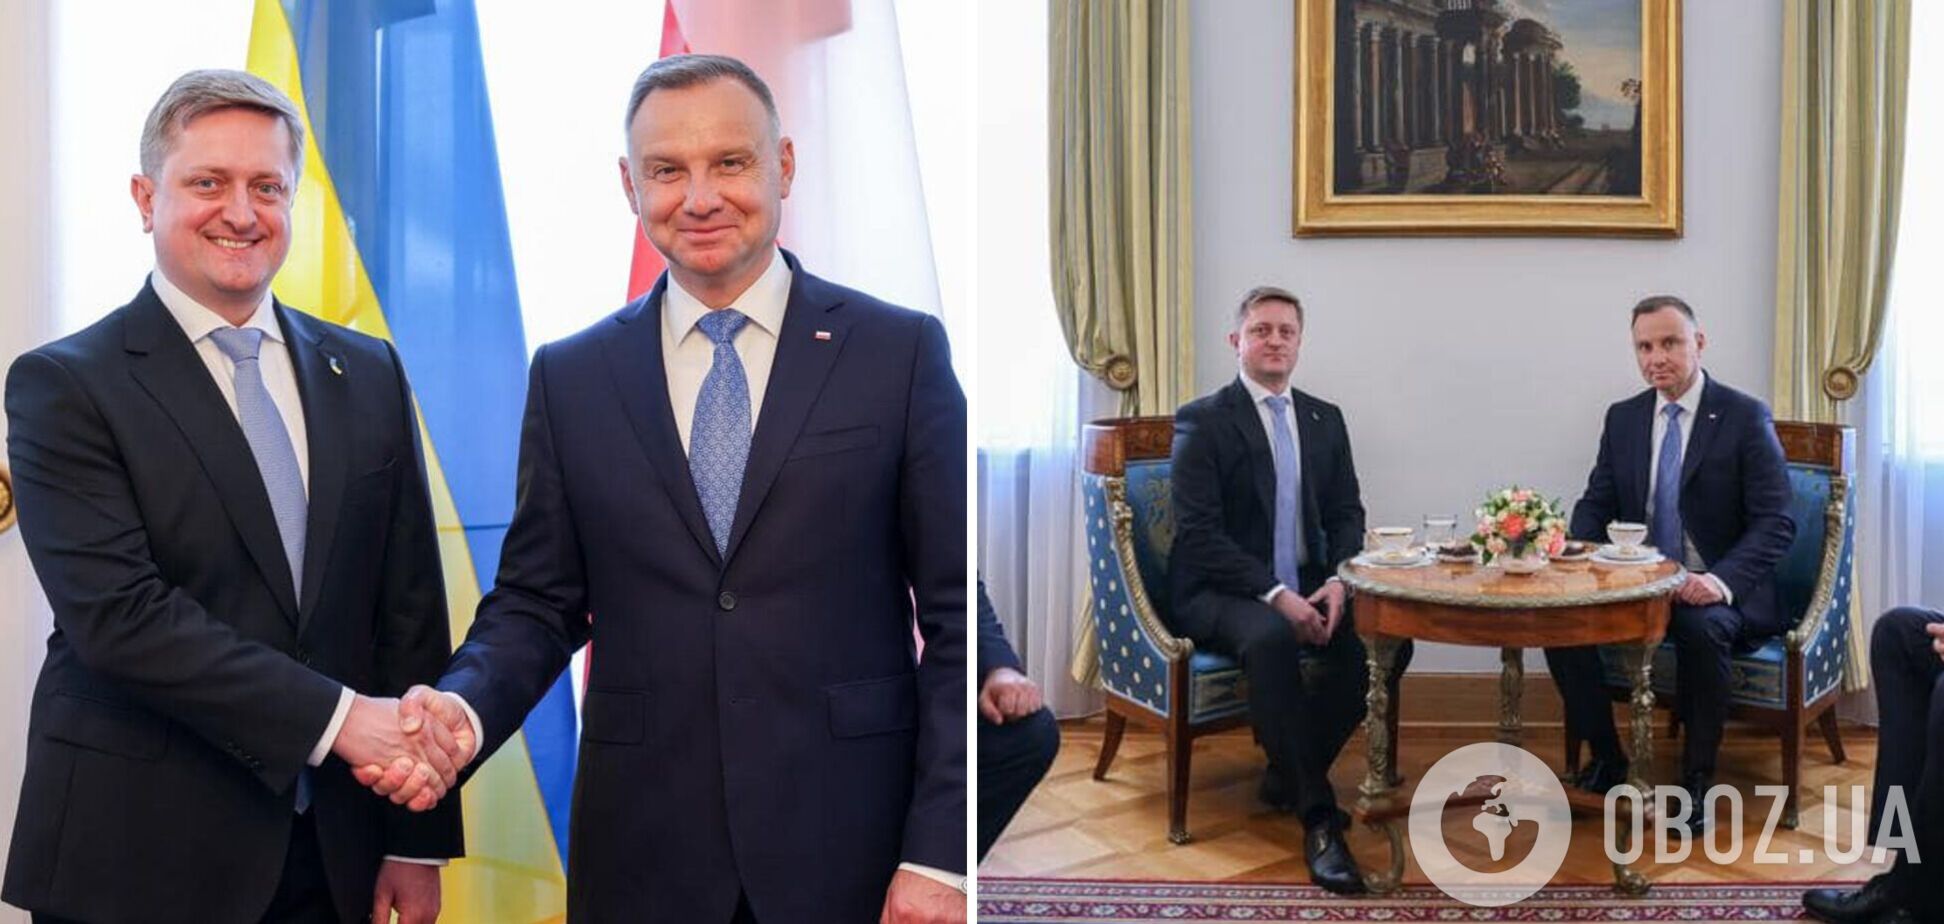 Новый посол Украины в Польше Зварыч вручил президенту Дуде верительные грамоты. Фото